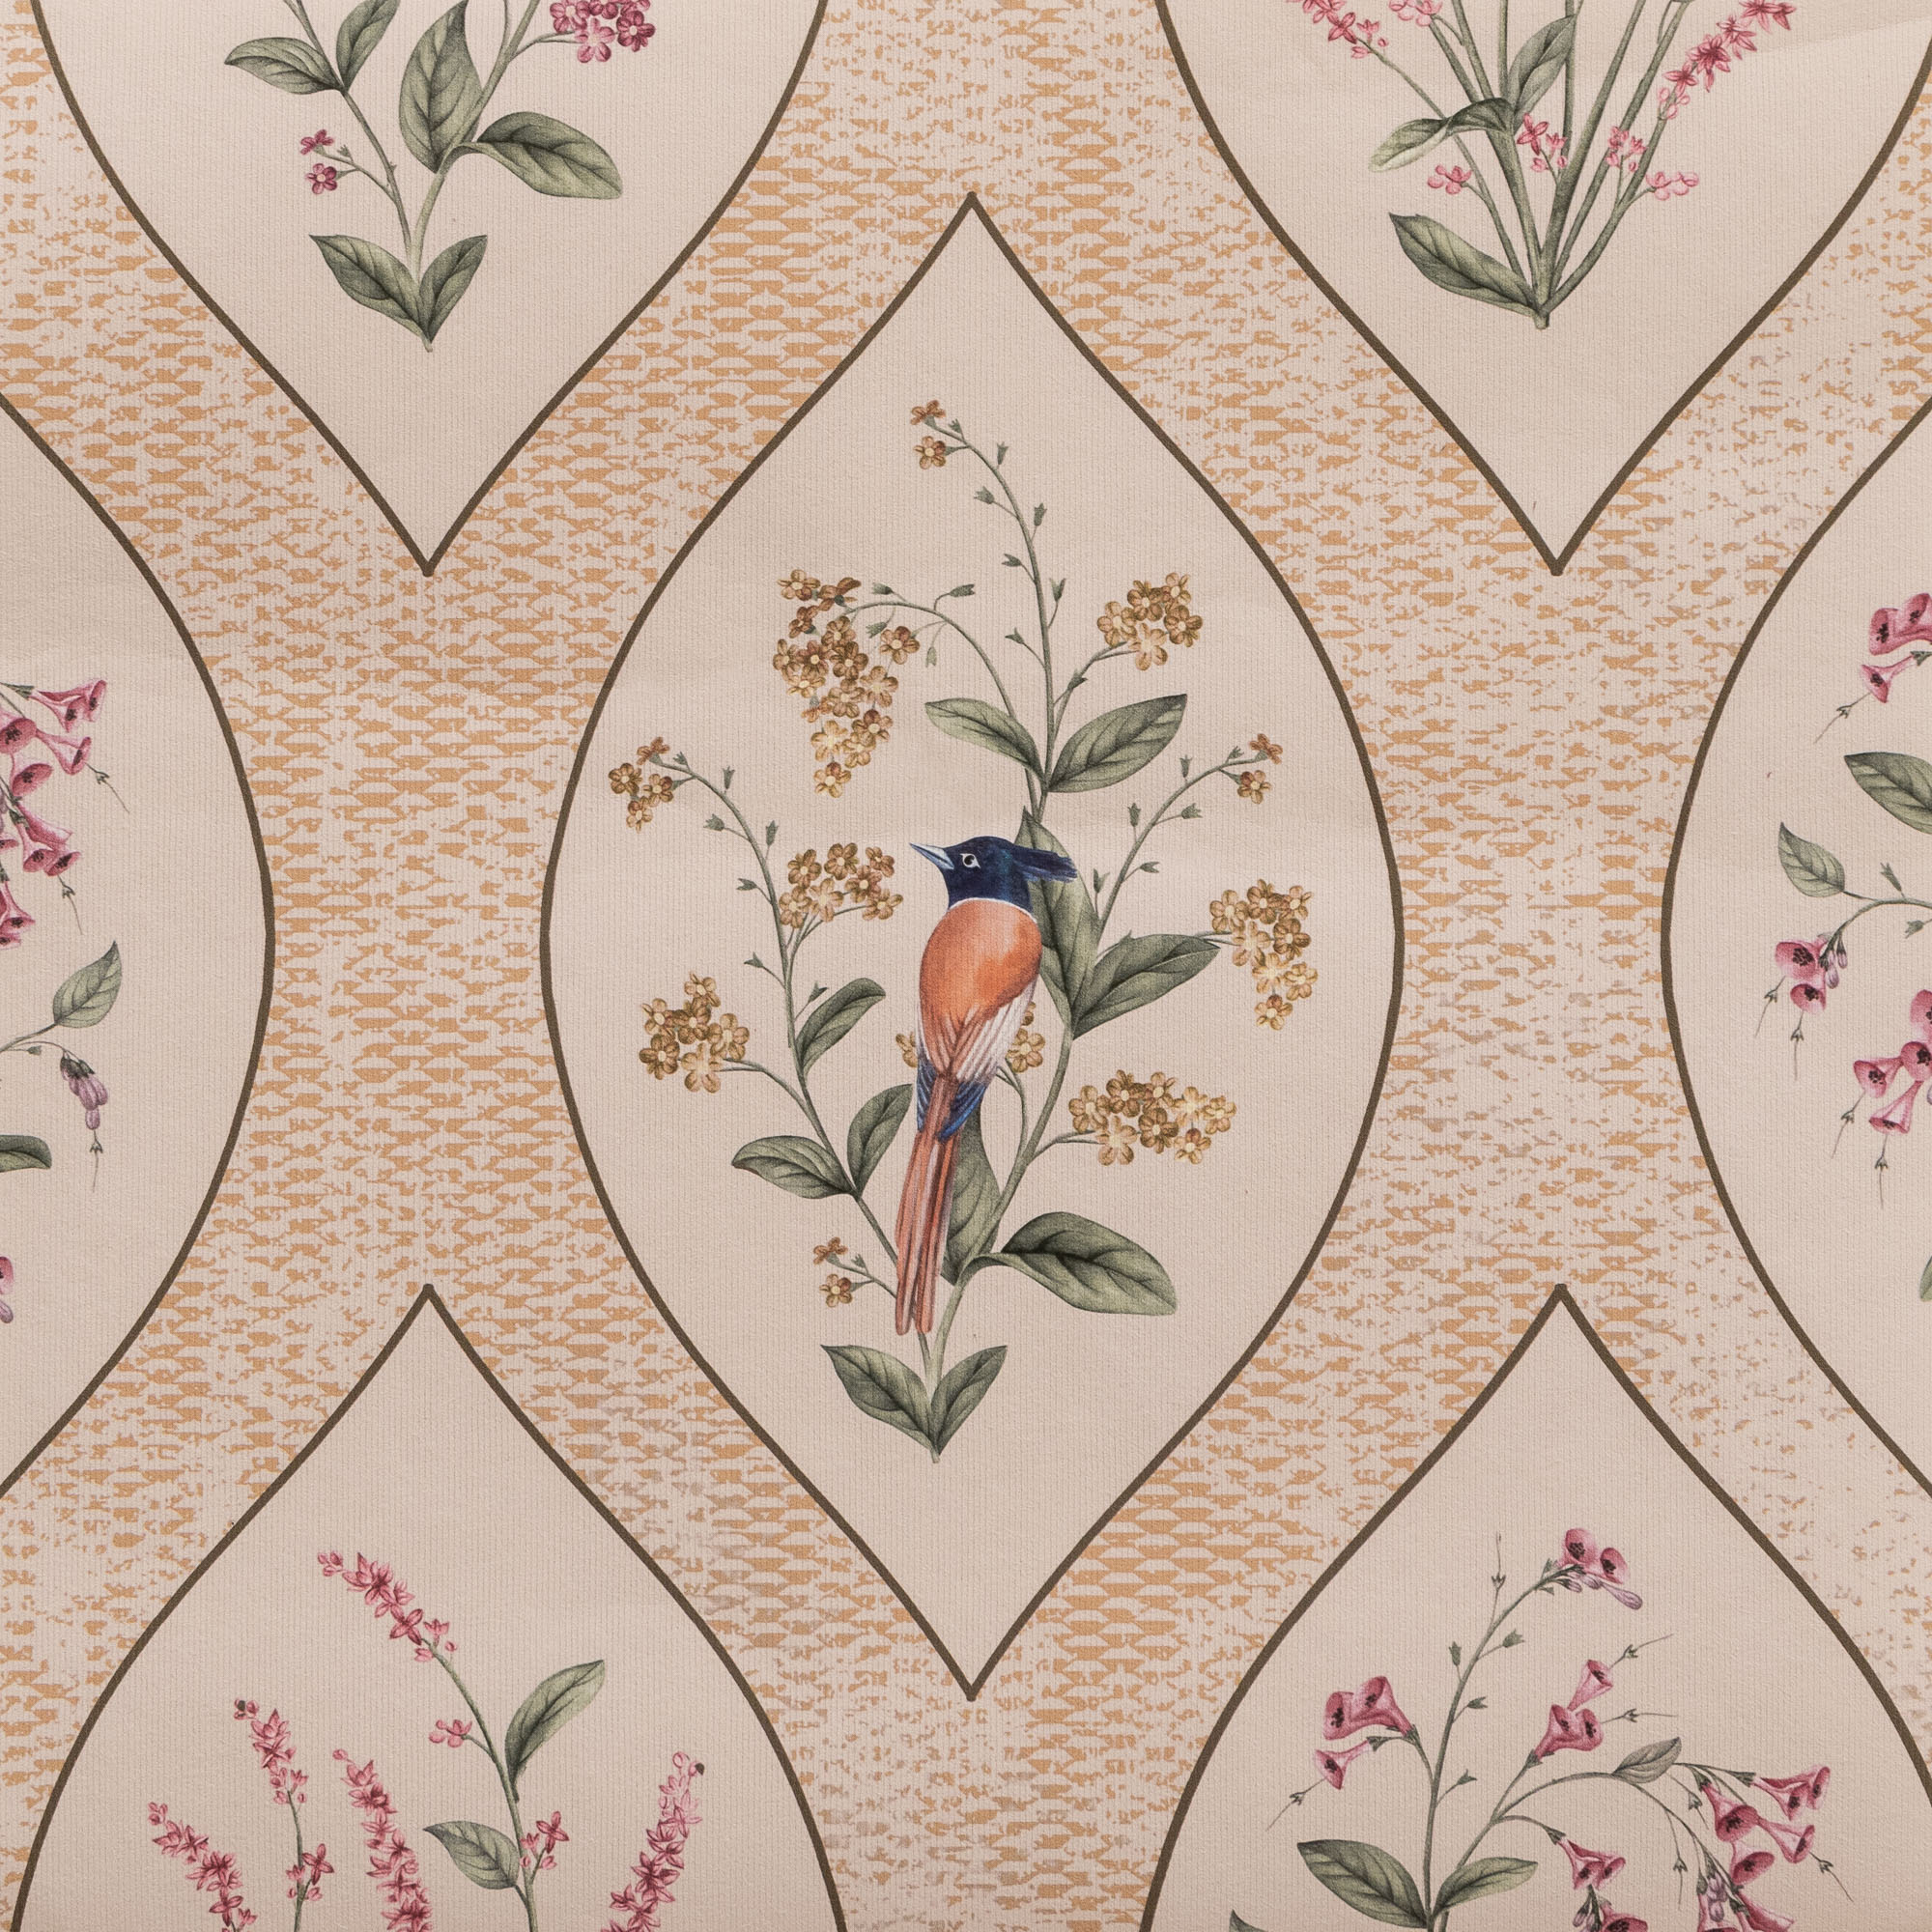 A Persian Corridor Spring - Wallpaper